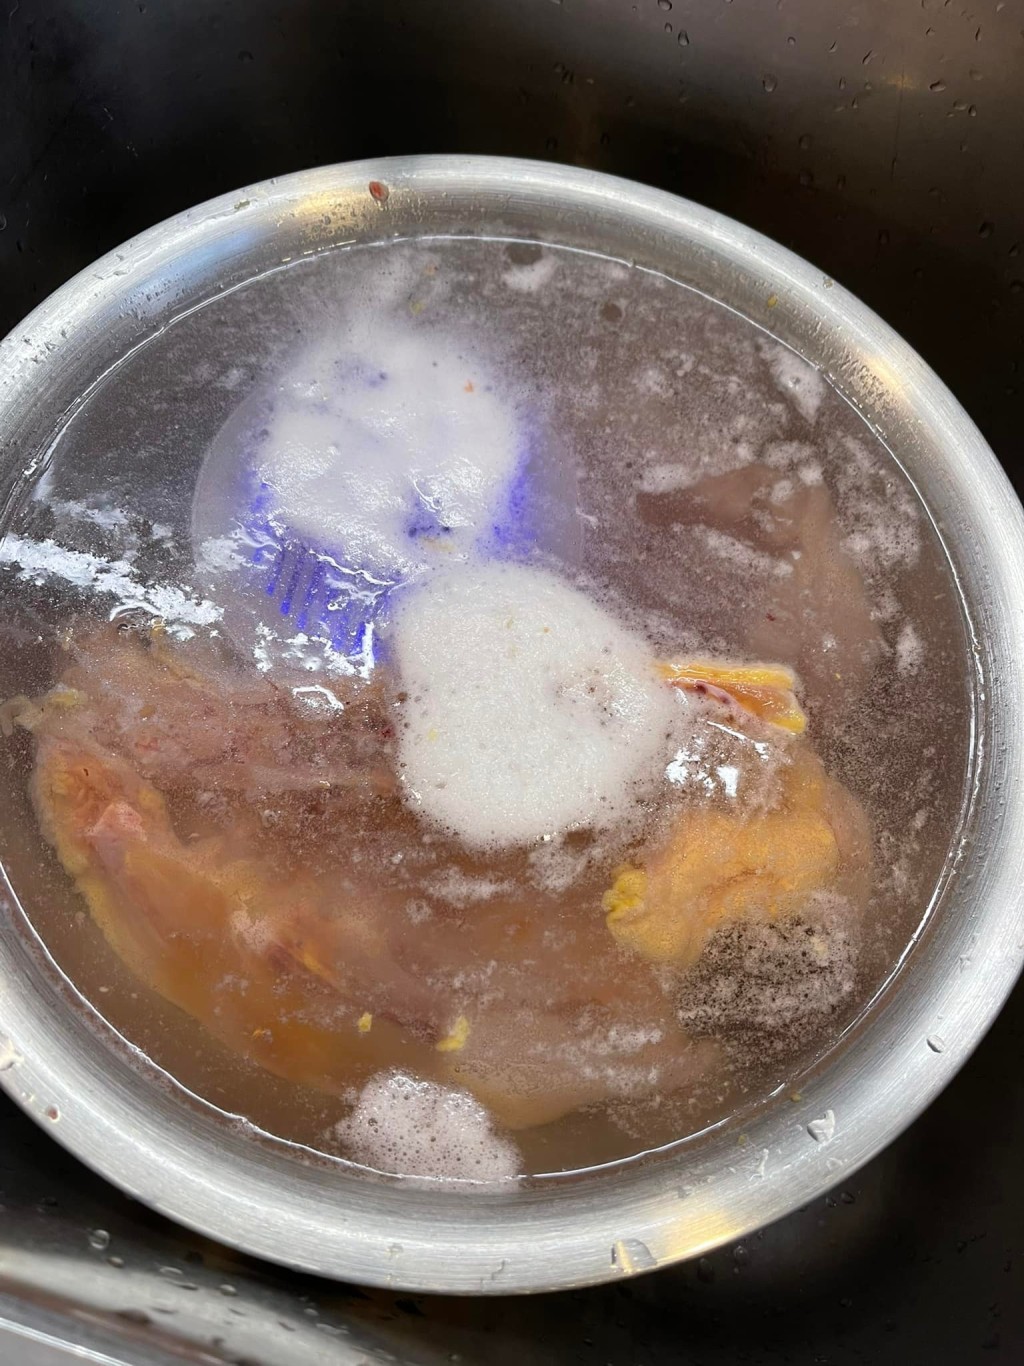 有网民用洗菜机浸泡鲜肉，水面浮现一堆泡沫。群组「淘宝开心Share」网民图片